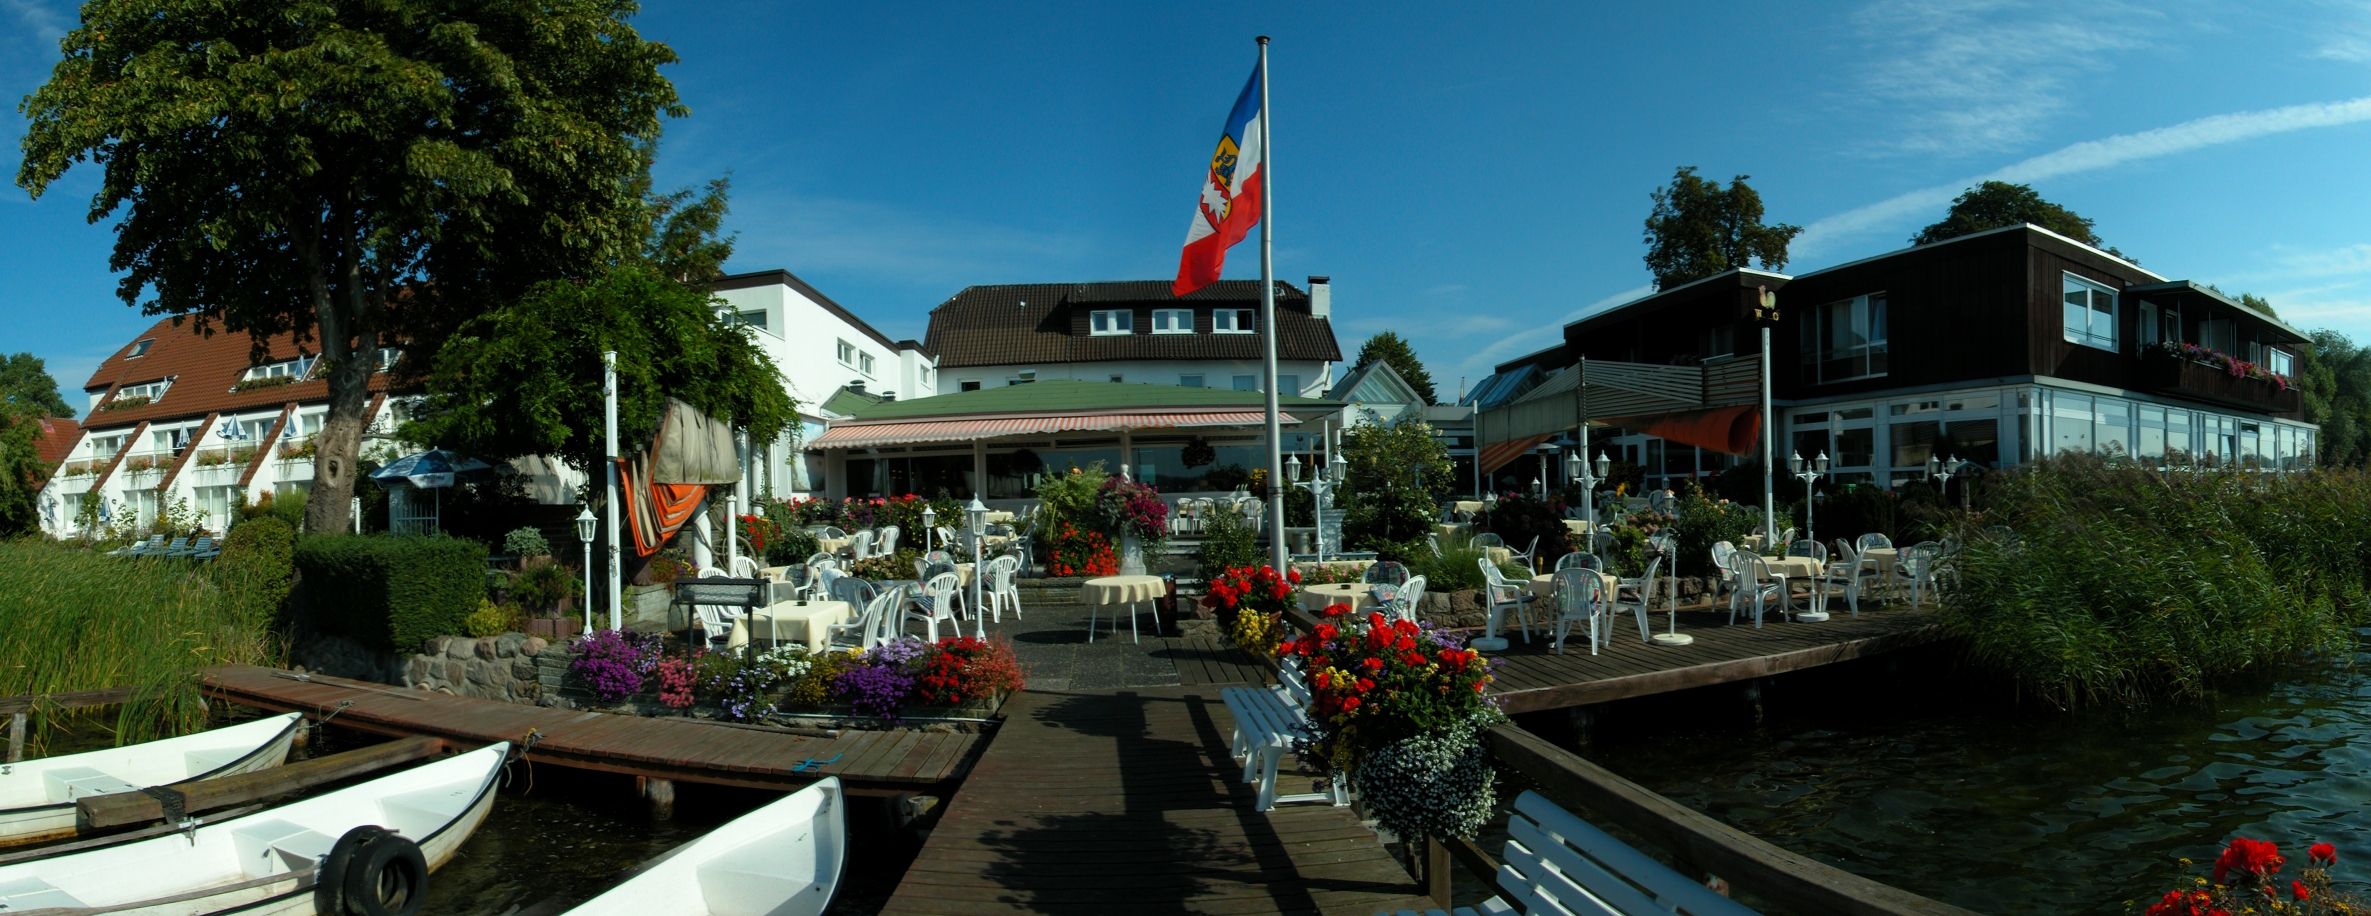 Hotel Seehof in Ratzeburg - ab 2013 von Schlichting Hotel betrieben